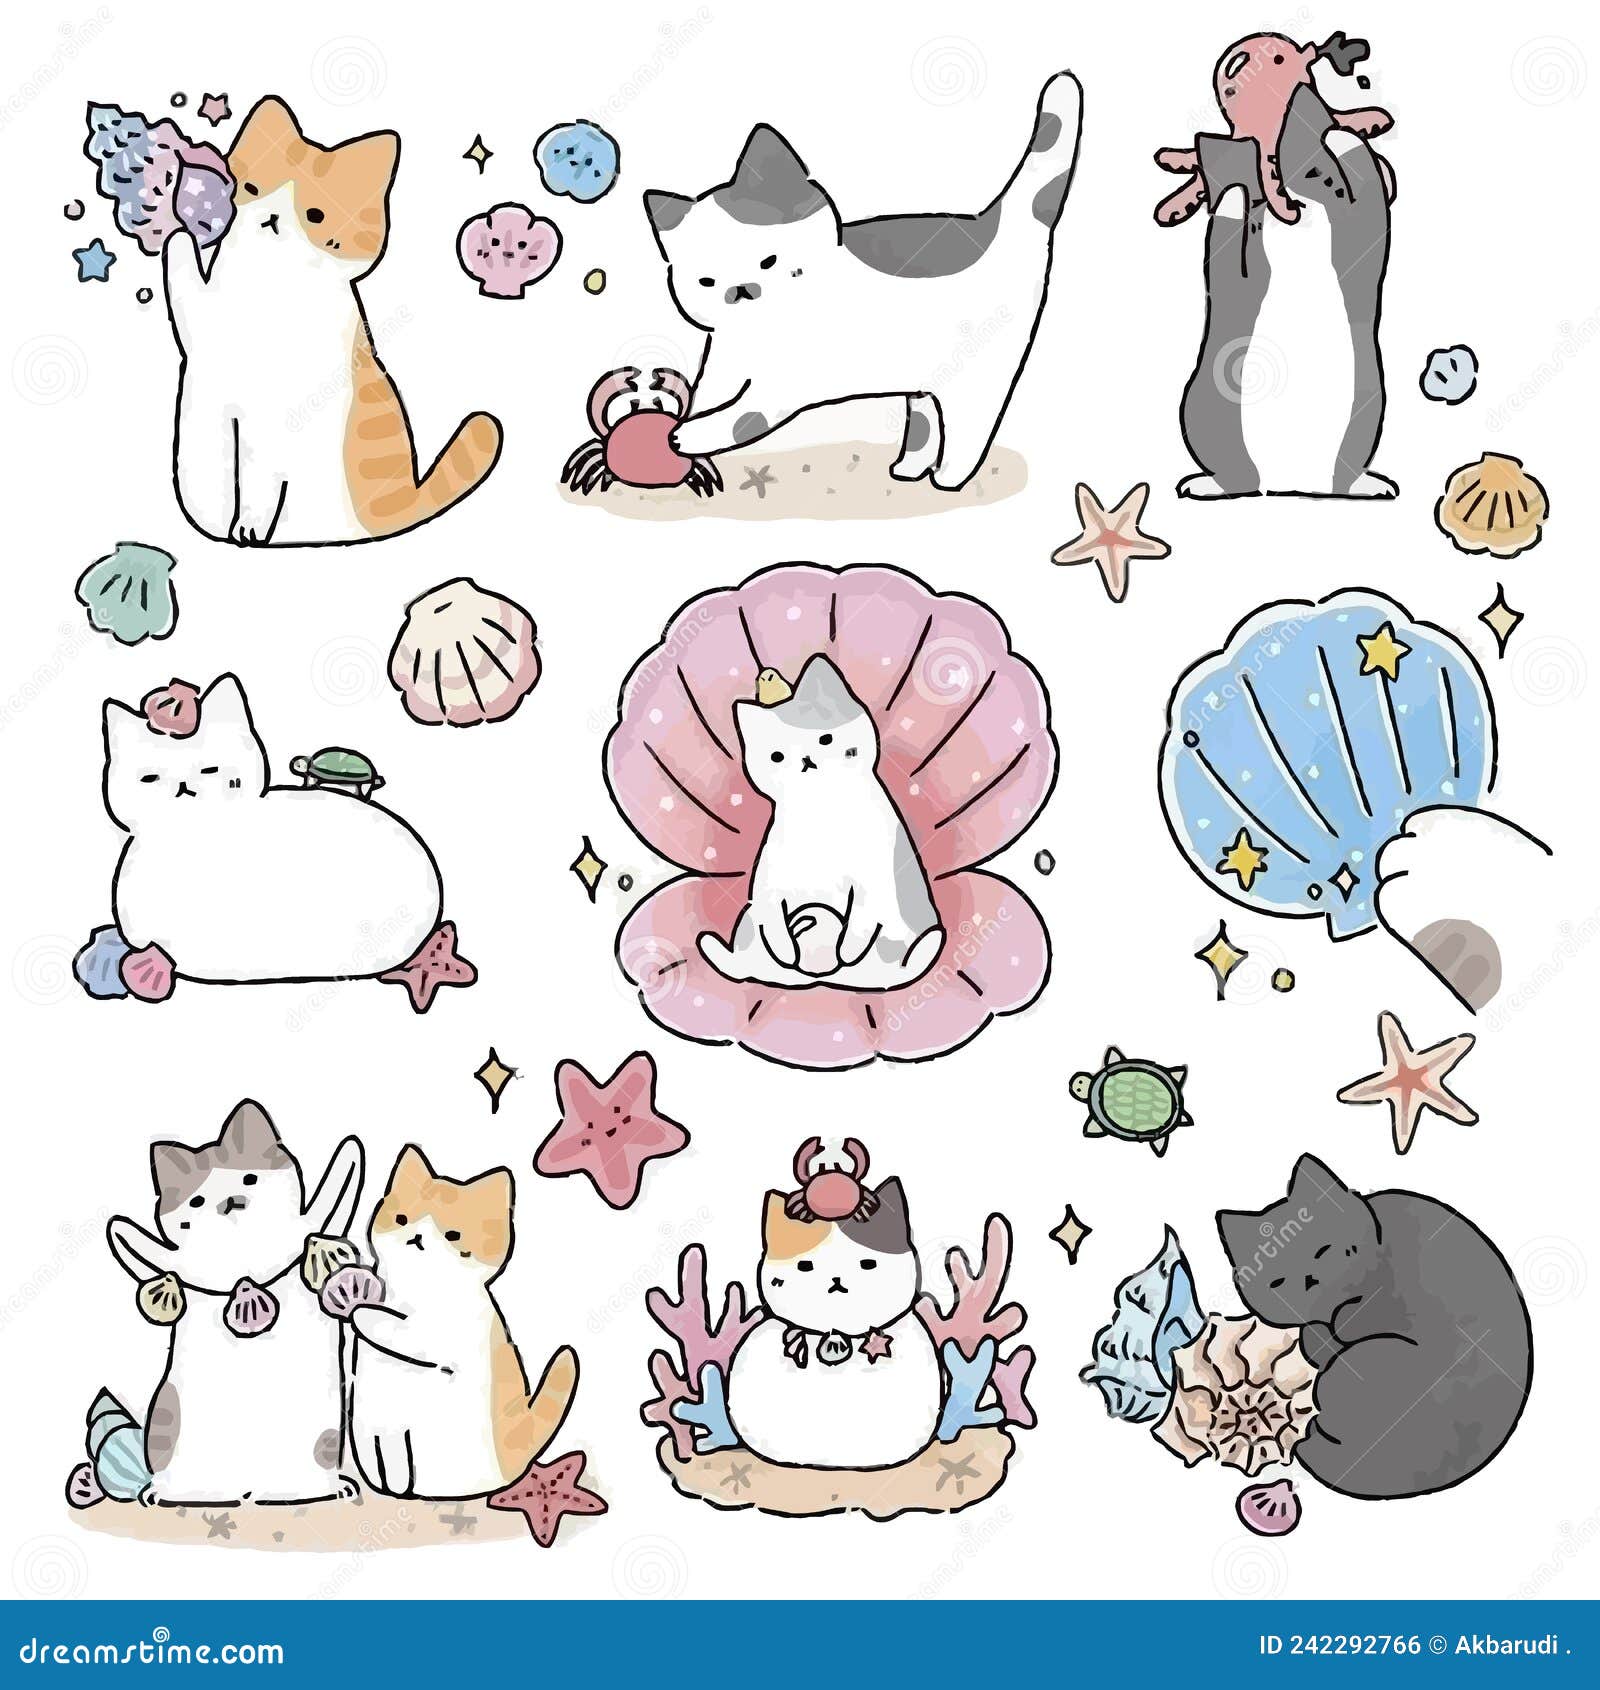 Kawaii cat flat Icon vector. Cute cat-flat illustration. Cute